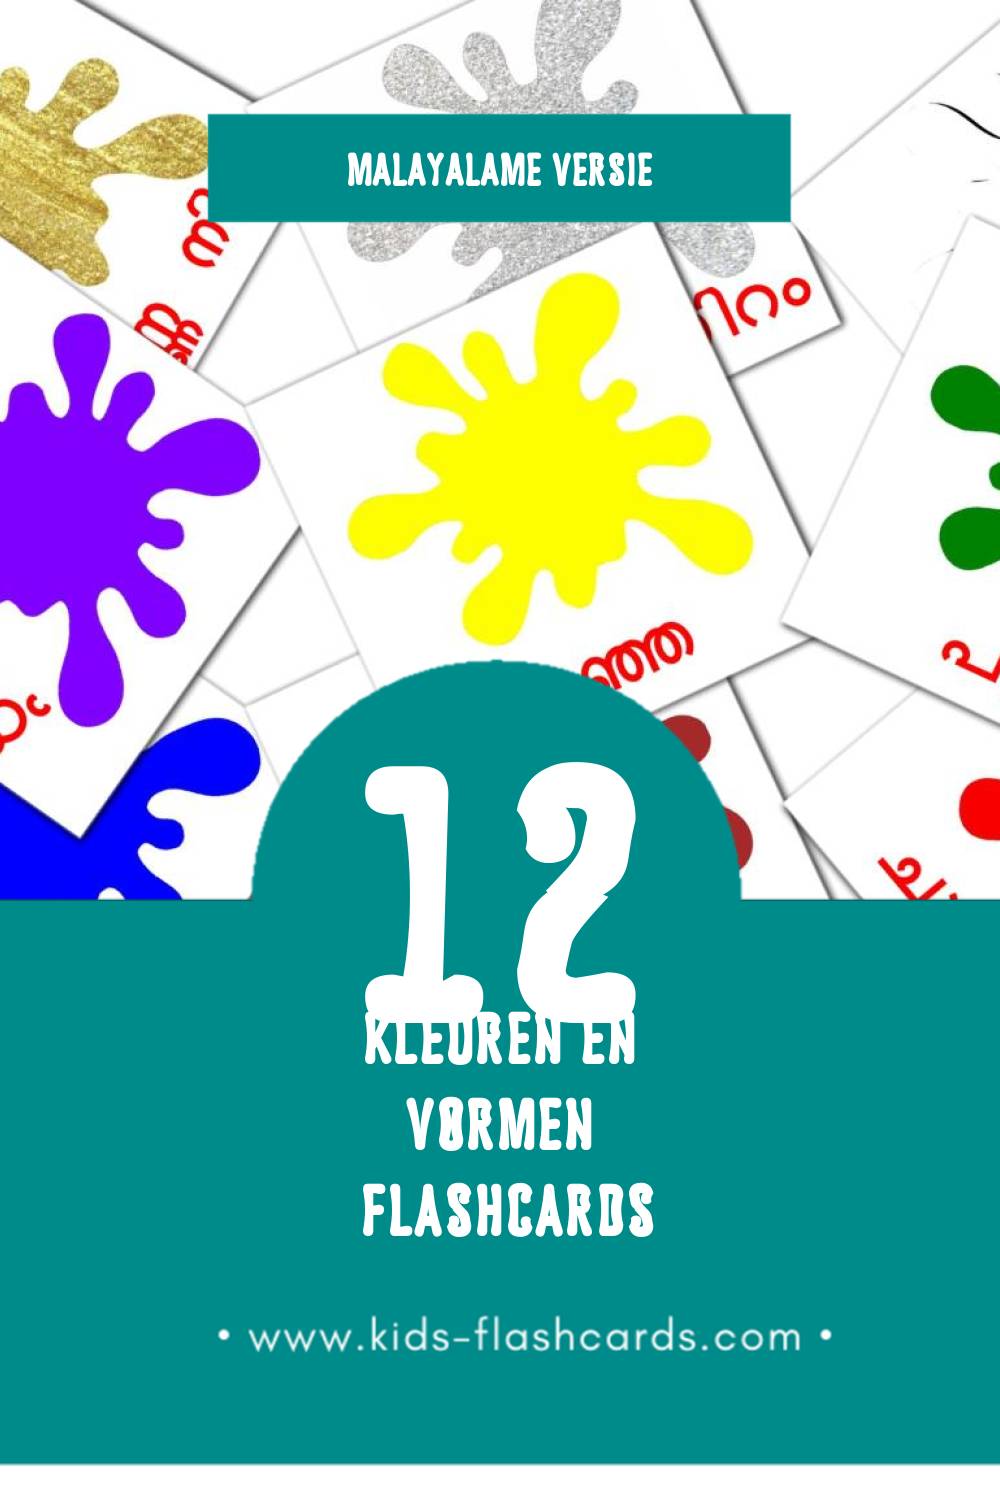 Visuele നിറങ്ങളും ആകൃതിയും Flashcards voor Kleuters (12 kaarten in het Malayalam)